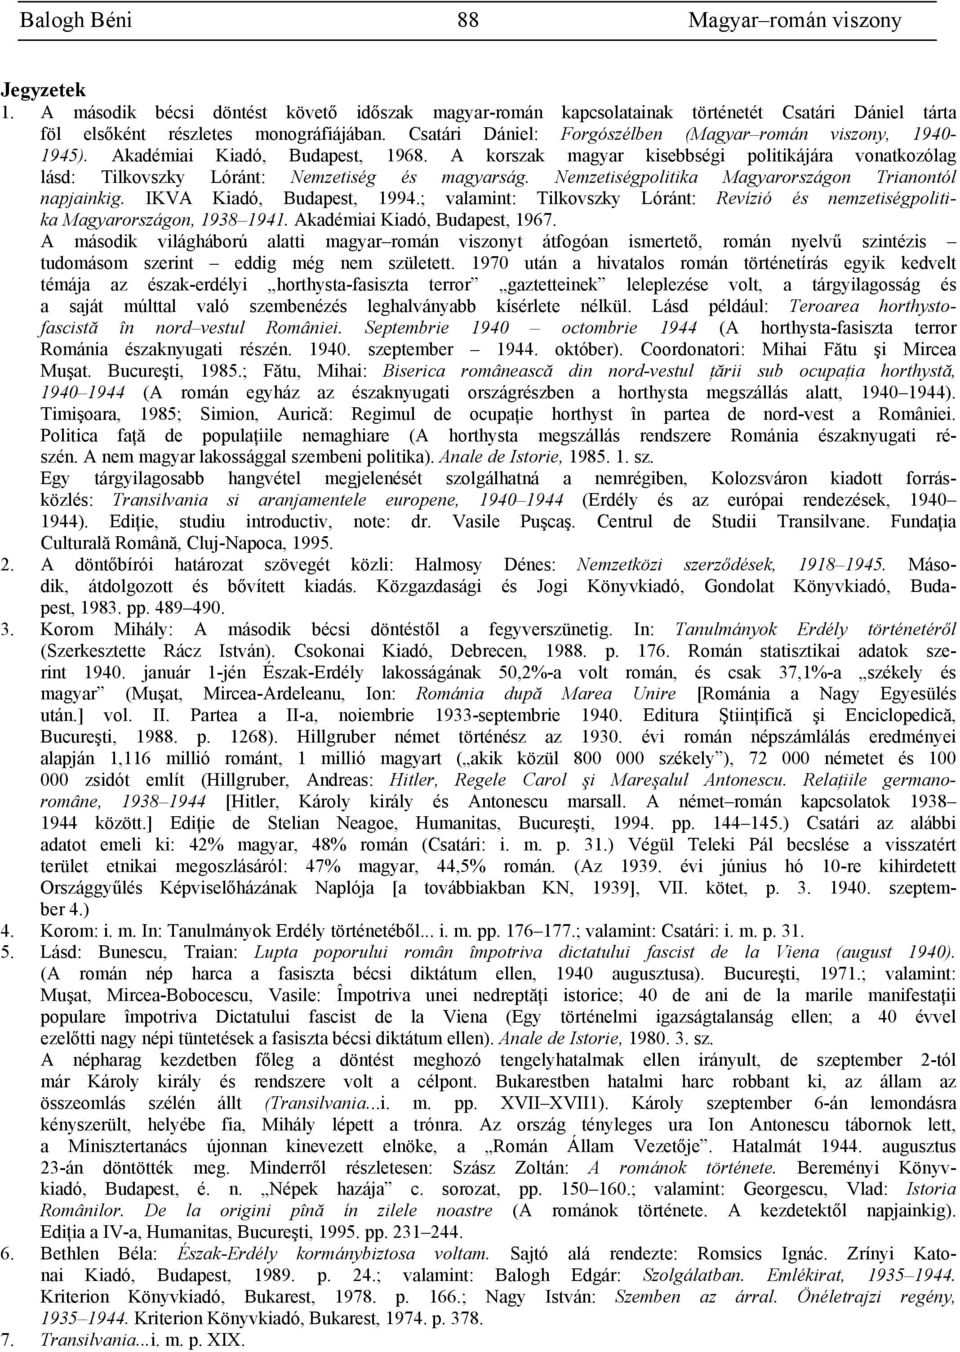 Nemzetiségpolitika Magyarországon Trianontól napjainkig. IKVA Kiadó, Budapest, 1994.; valamint: Tilkovszky Lóránt: Revízió és nemzetiségpolitika Magyarországon, 1938 1941.